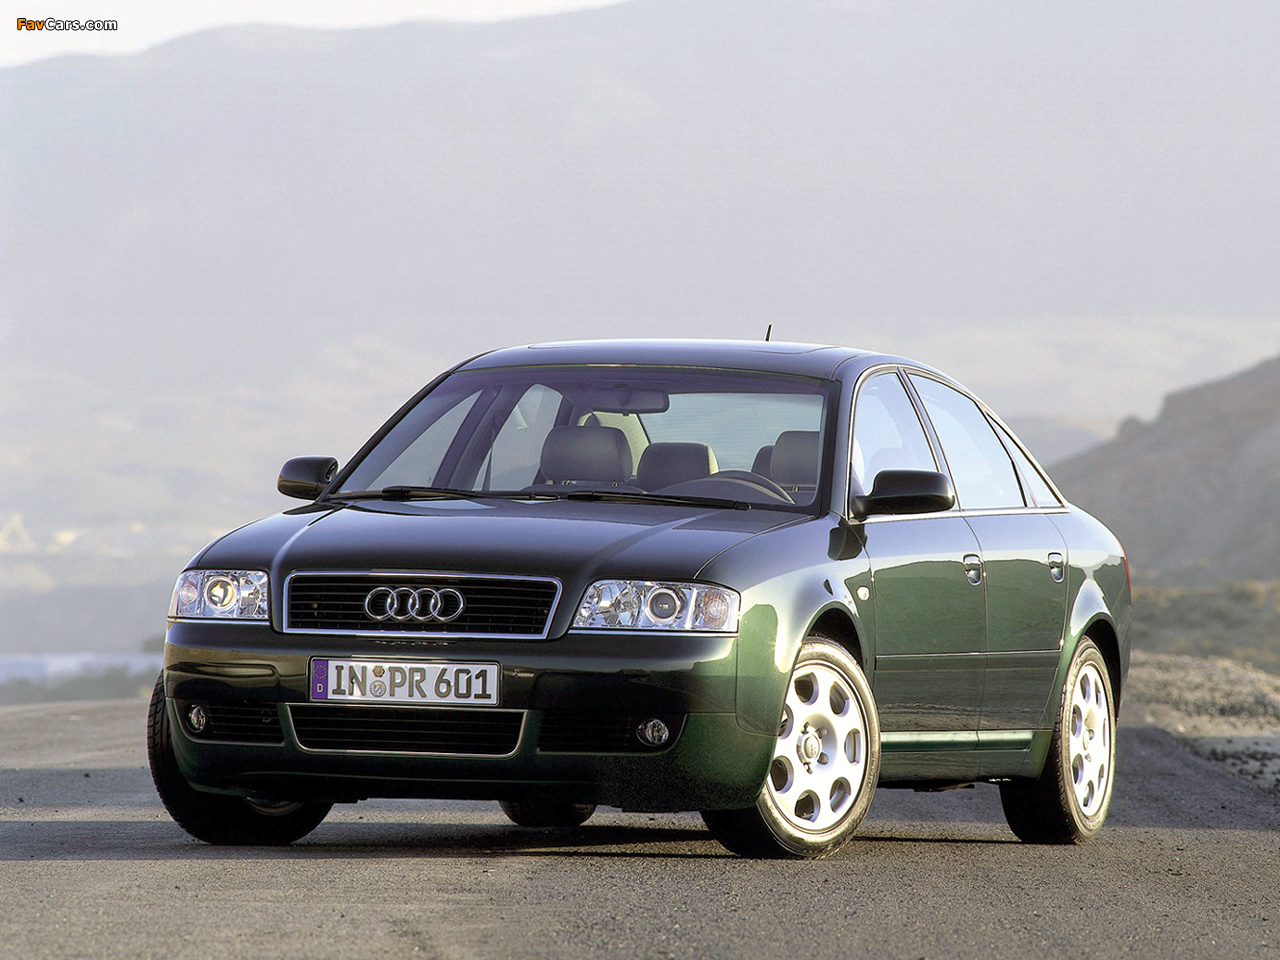 81 a 6 c. Audi a6 c5. Audi a6 c5 2000. Audi a6 c5 1997. Audi a6 [c5] 1997-2004.